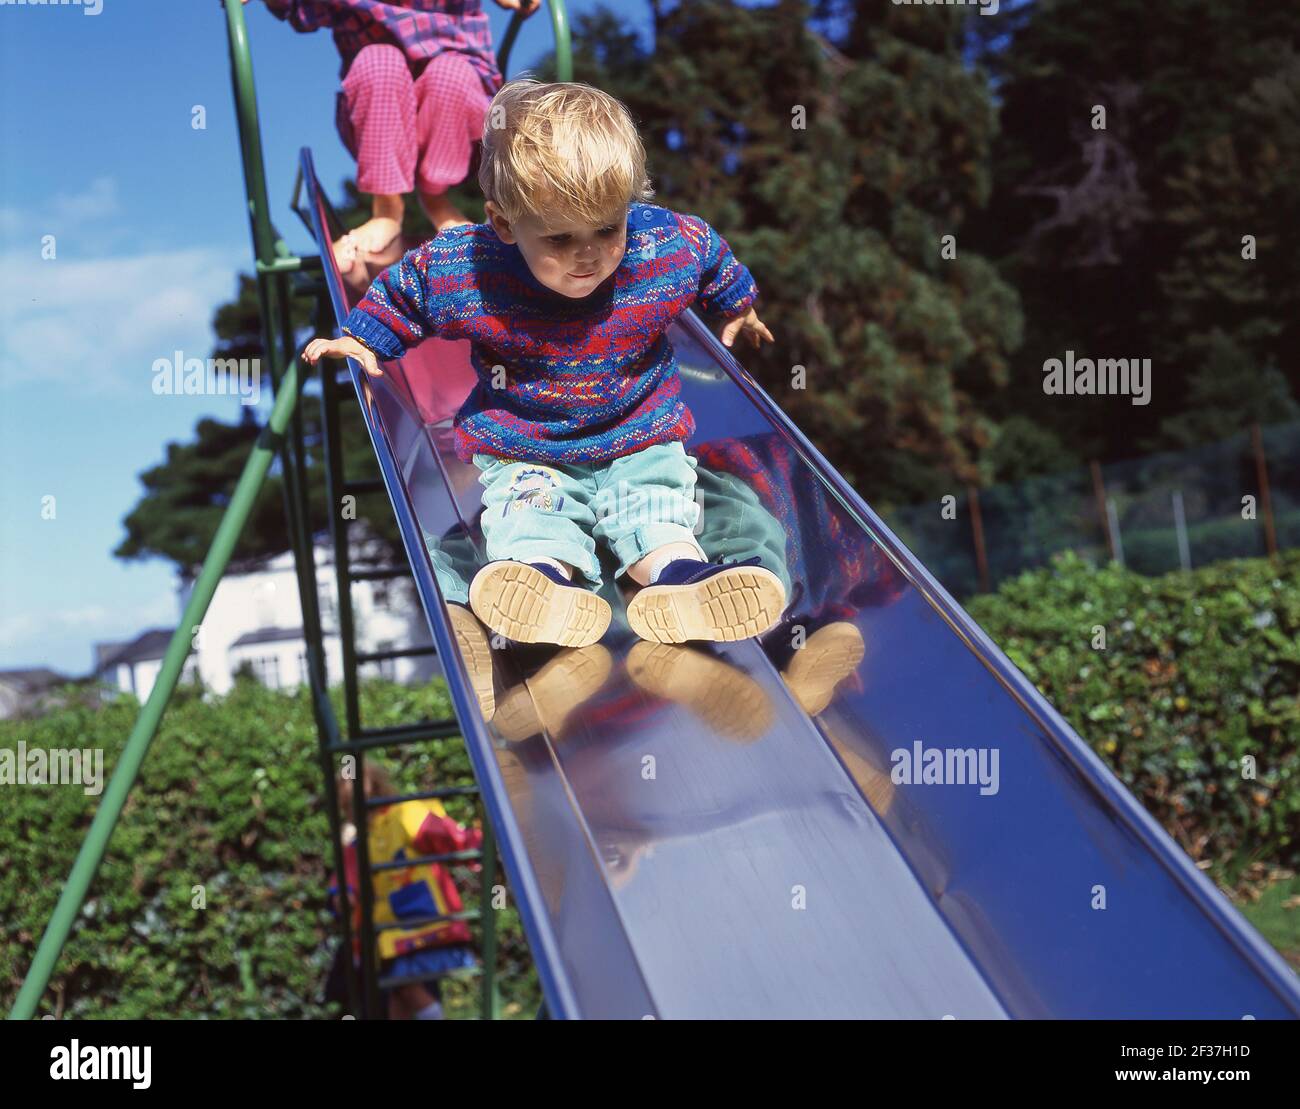 Jeune garçon sur la diapositive en aire de jeux, Berkshire, Angleterre, Royaume-Uni Banque D'Images